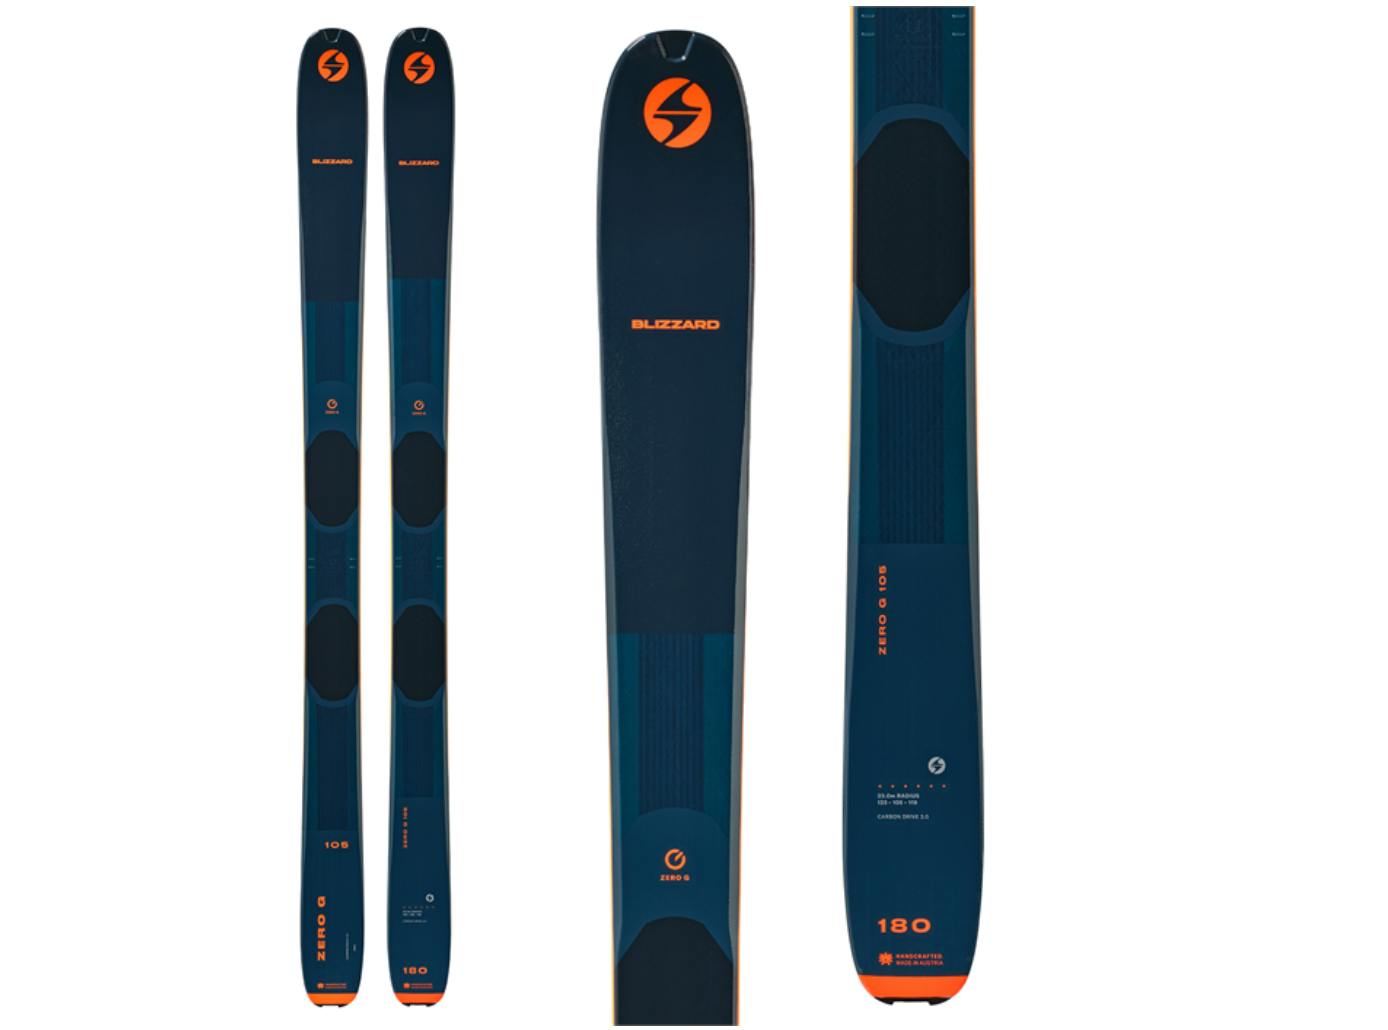 The Blizzard Zero G 105 Skis.